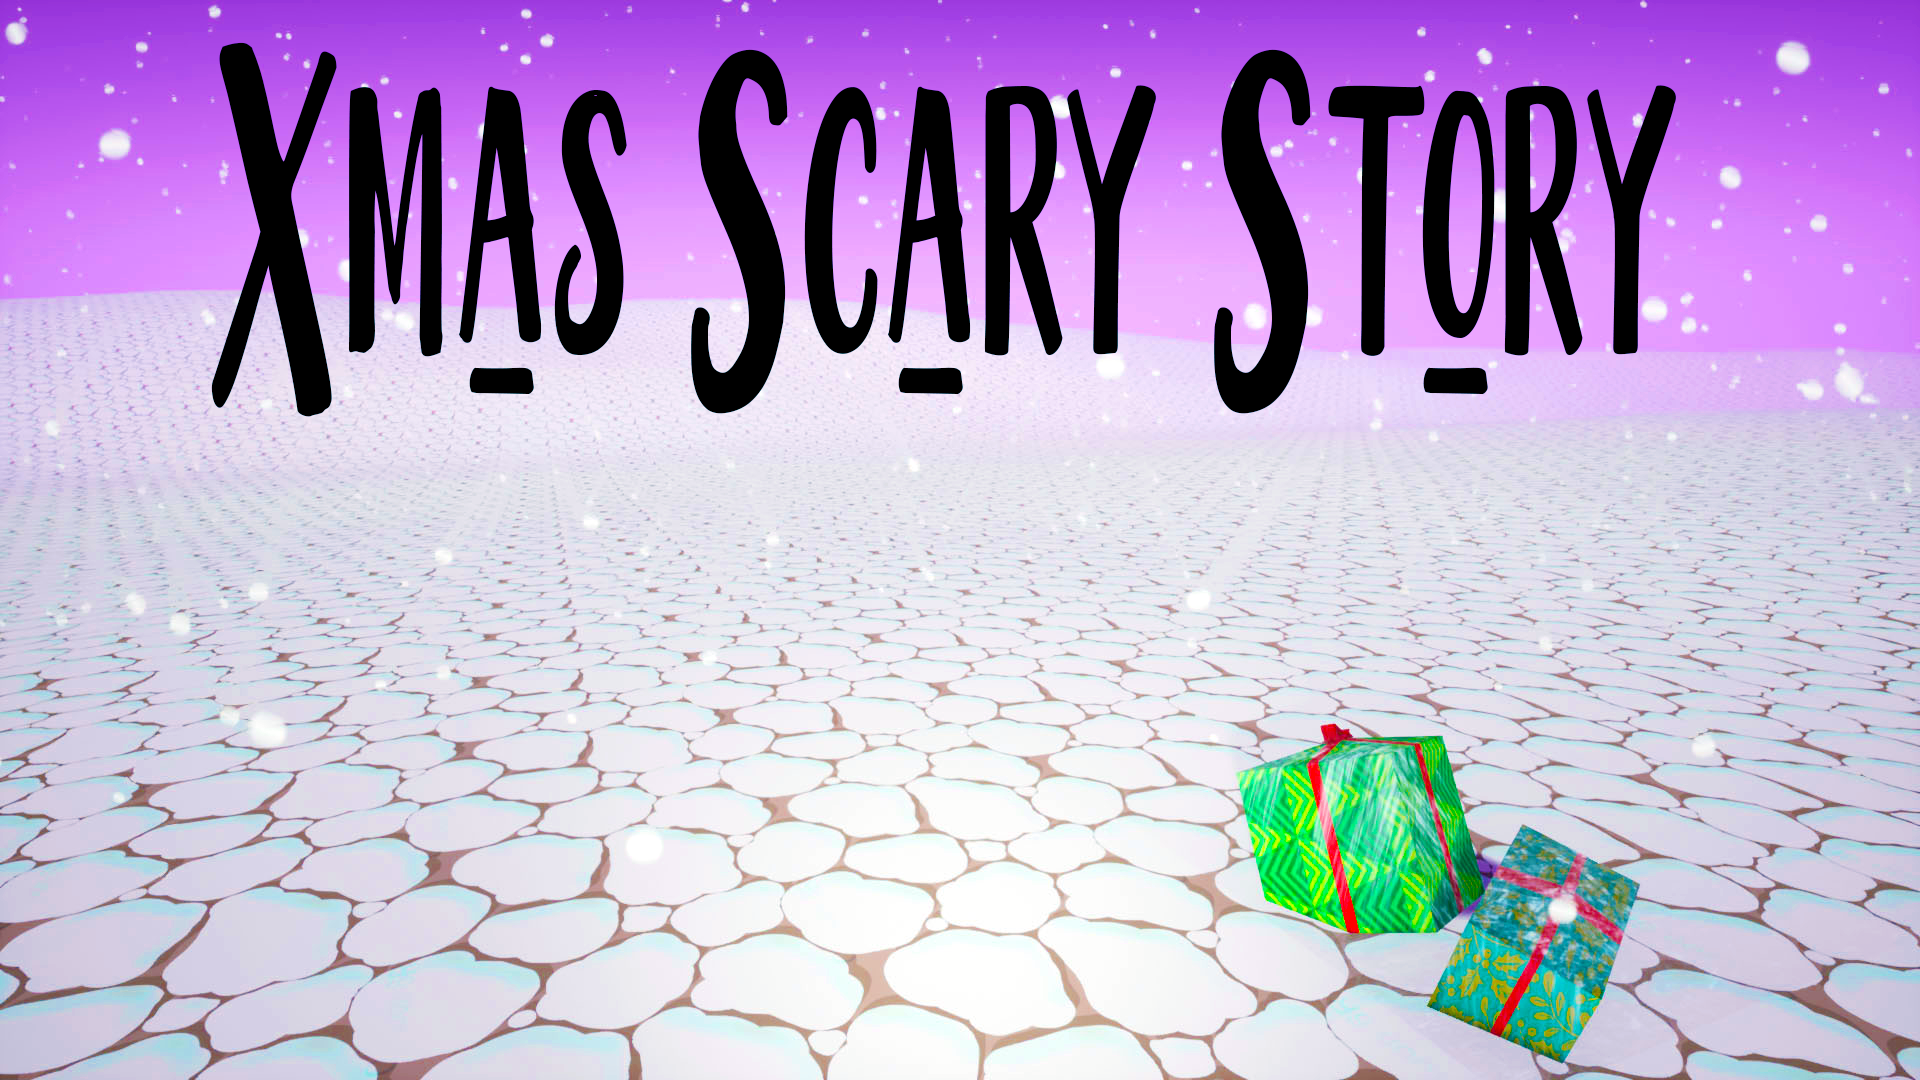 Xmas Scary Story